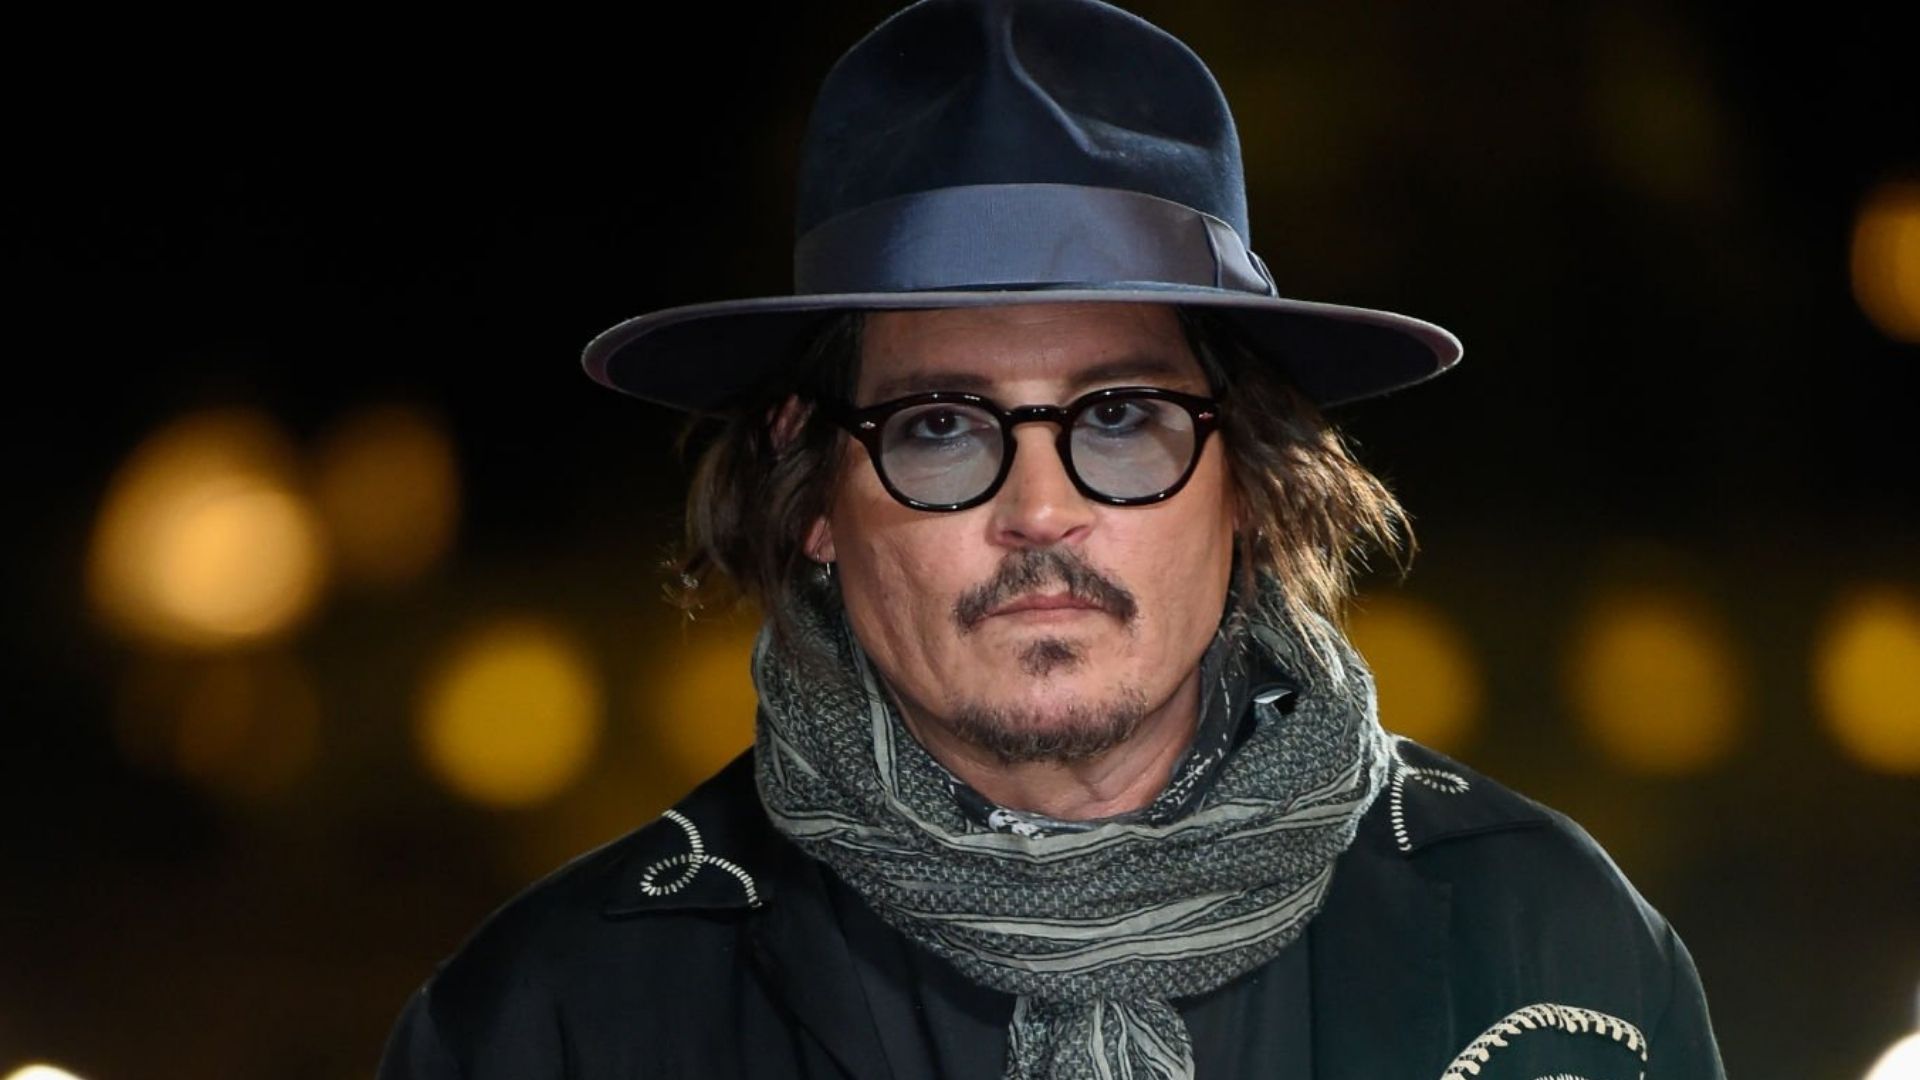 Johnny Depp viverá rei francês Luís XV em novo filme da Netflix, diz site